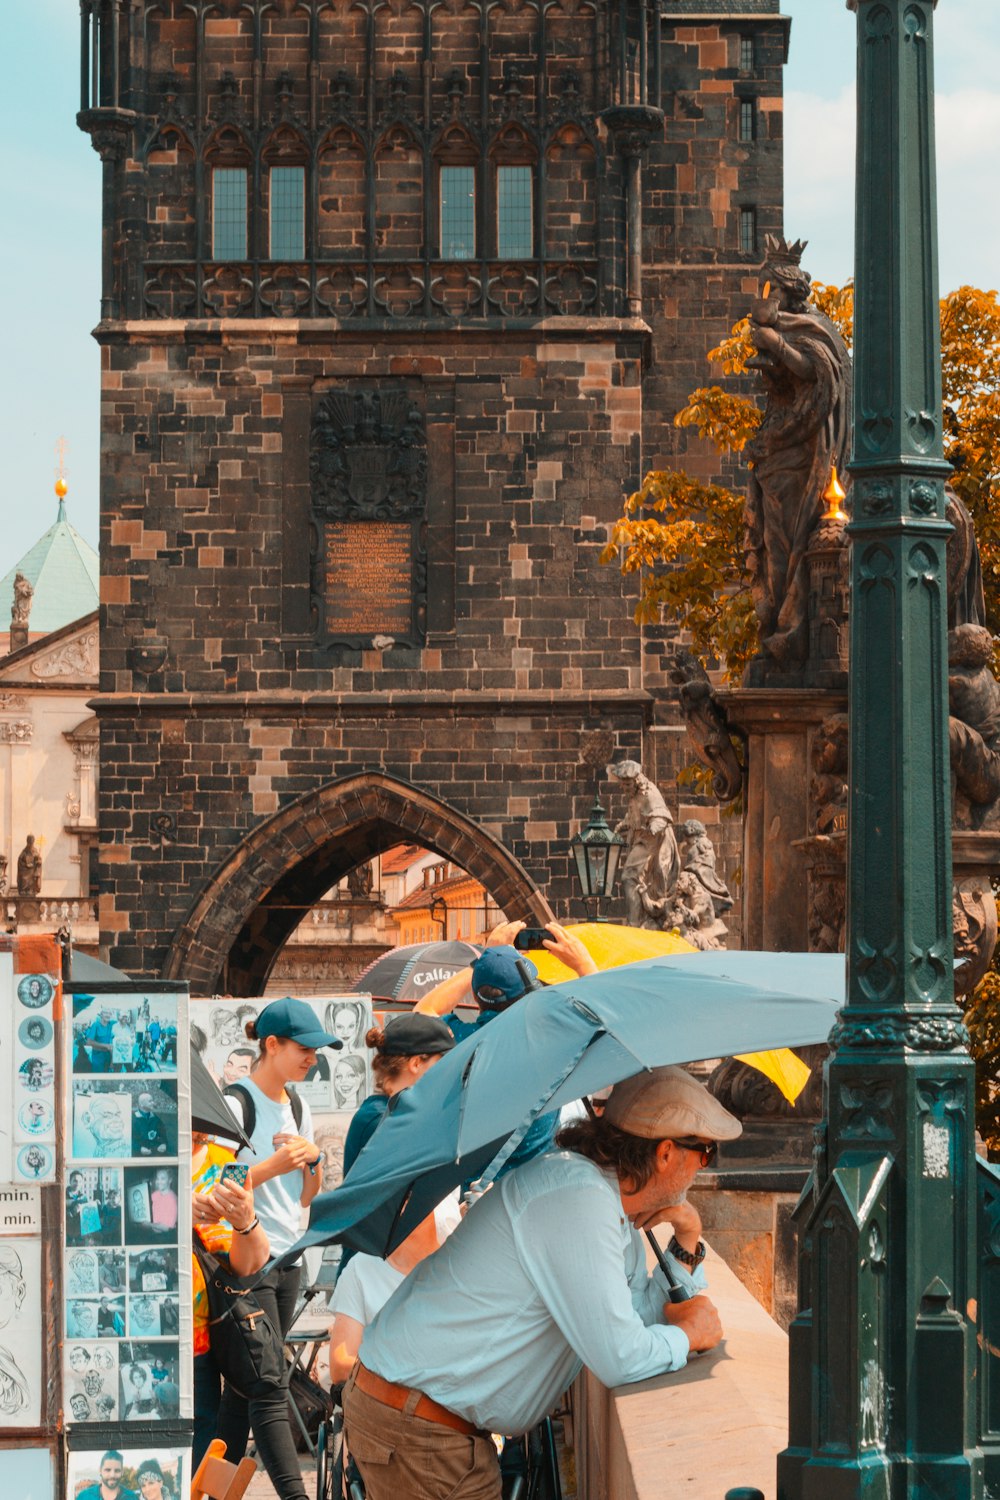 a man with an umbrella on a street corner